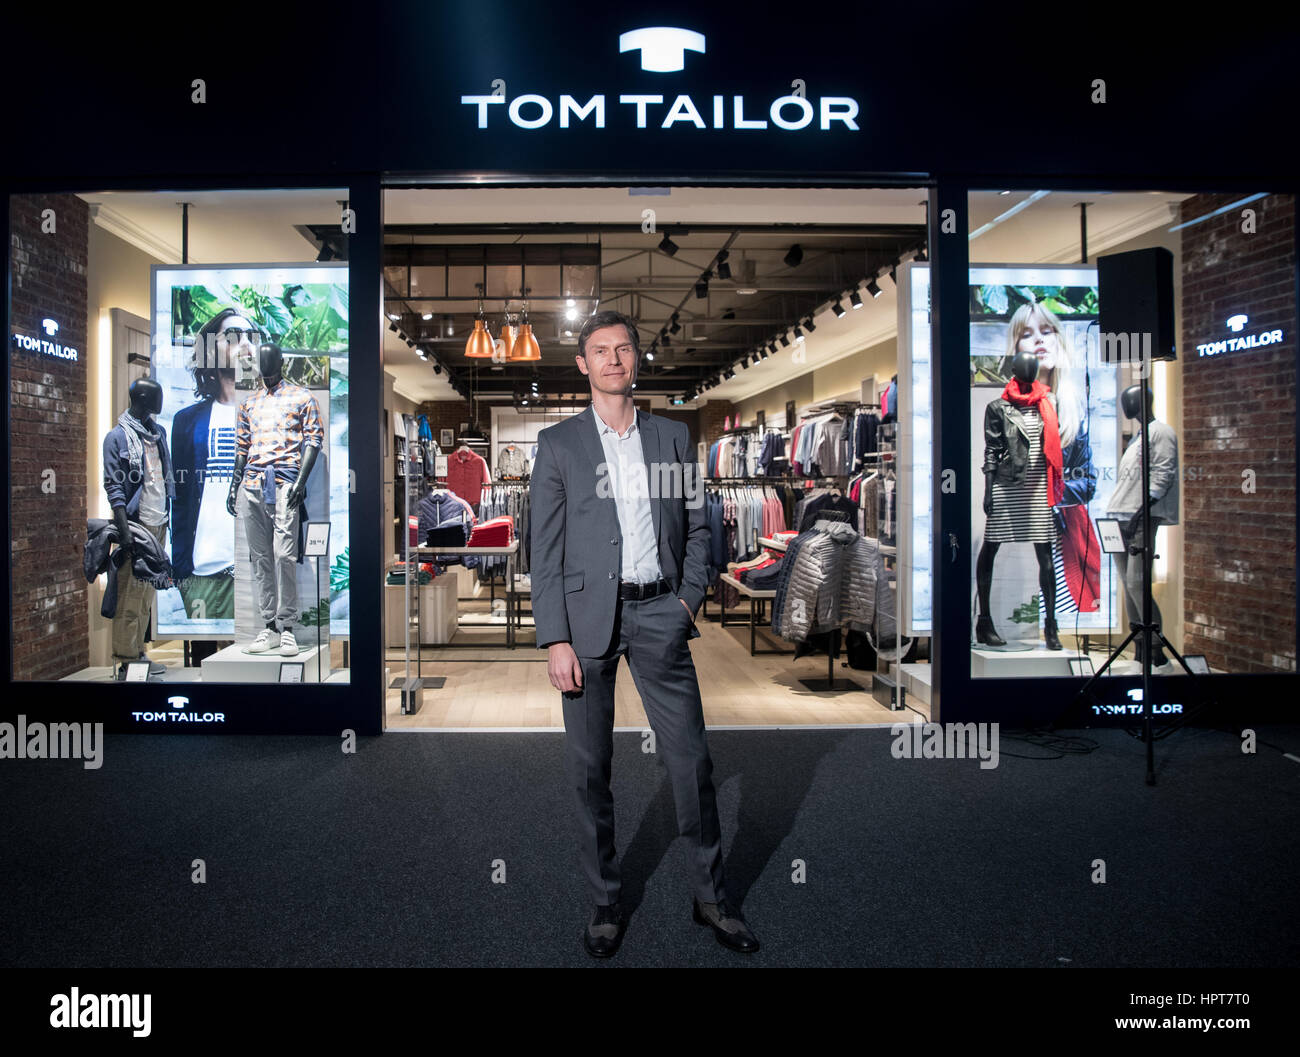 Heiko Schaefer, presidente interino de la compañía de moda Tom Tailor, está  delante de un show store en la sede en Hamburgo, Alemania, el 22 de febrero  de 2017. La firma de